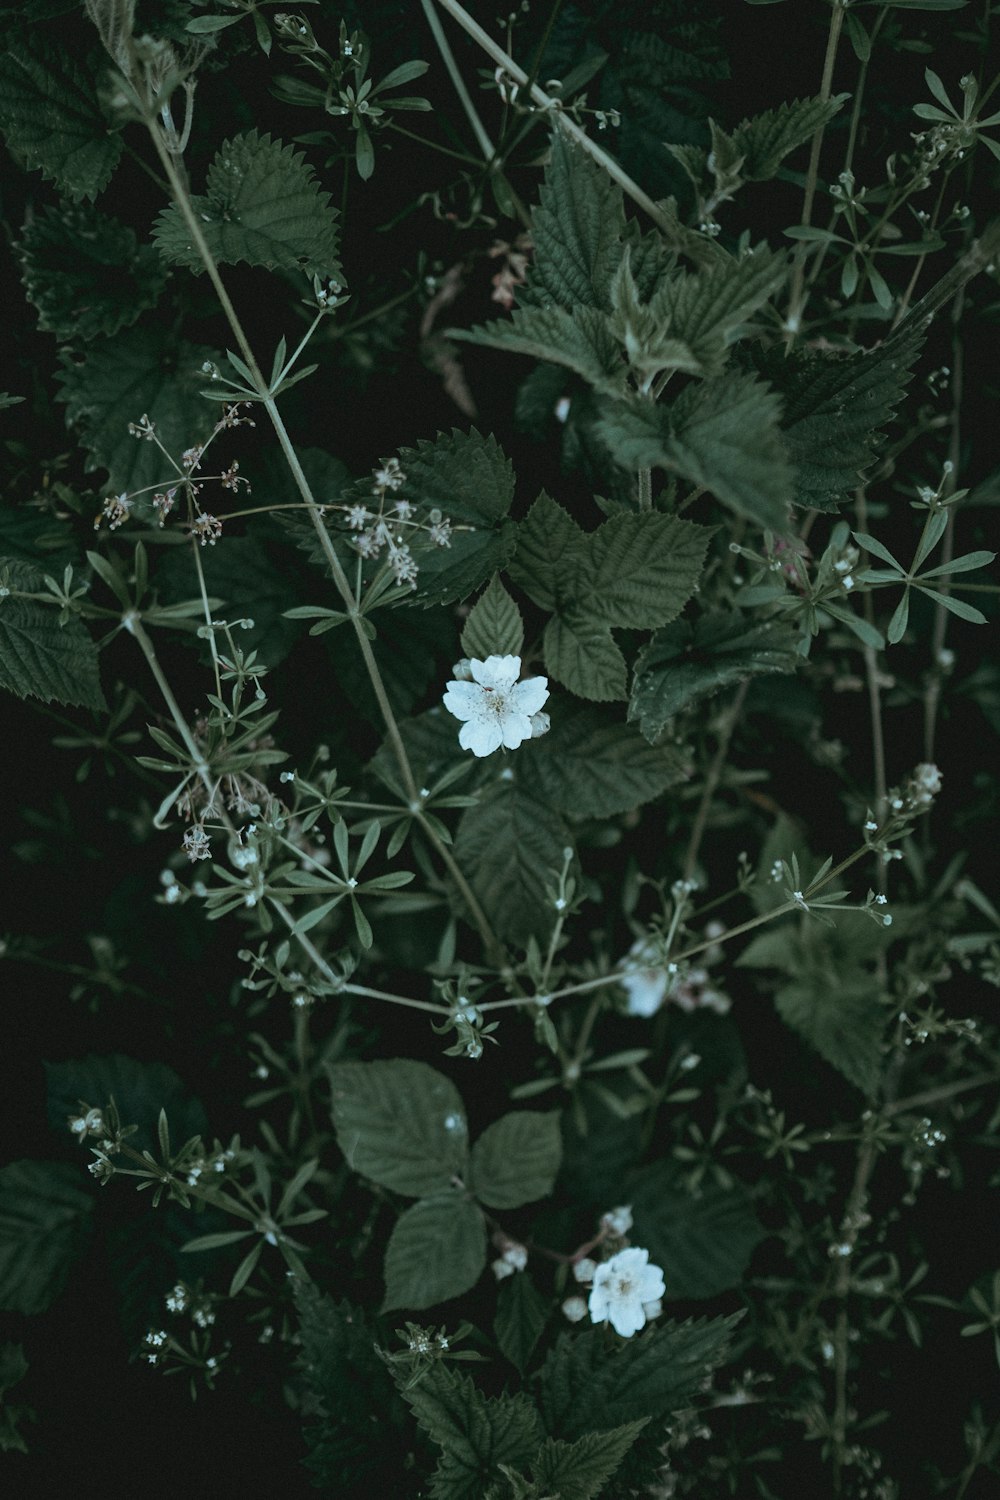 두 개의 흰 꽃잎이 달린 꽃의 근접 촬영 사진